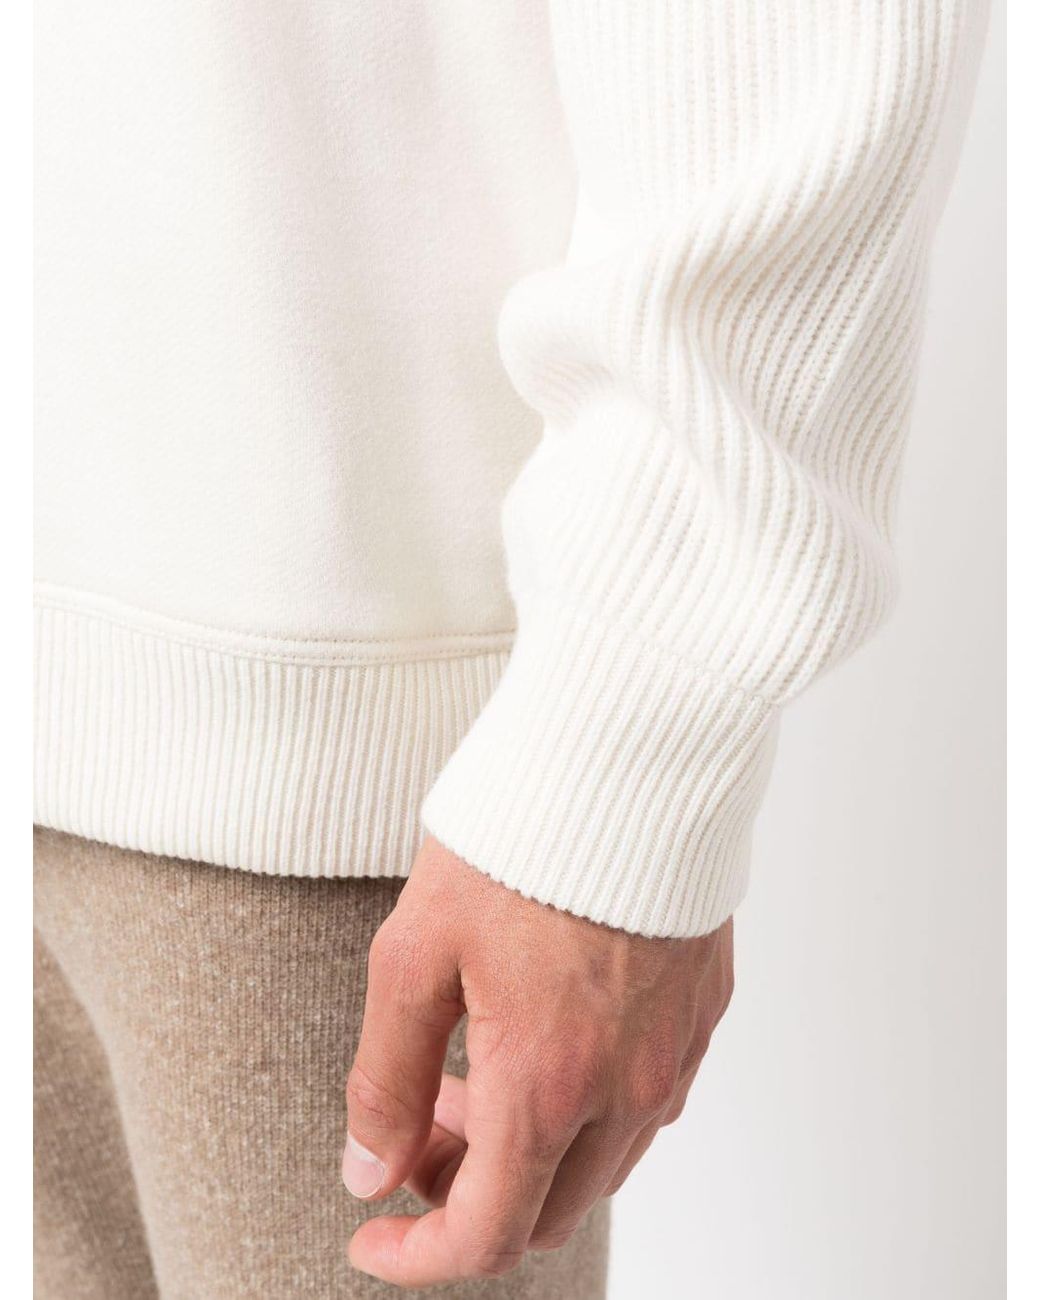 BRUNELLO CUCINELLI 'Panelled' Cashmere Crewneck Knit Cream/White